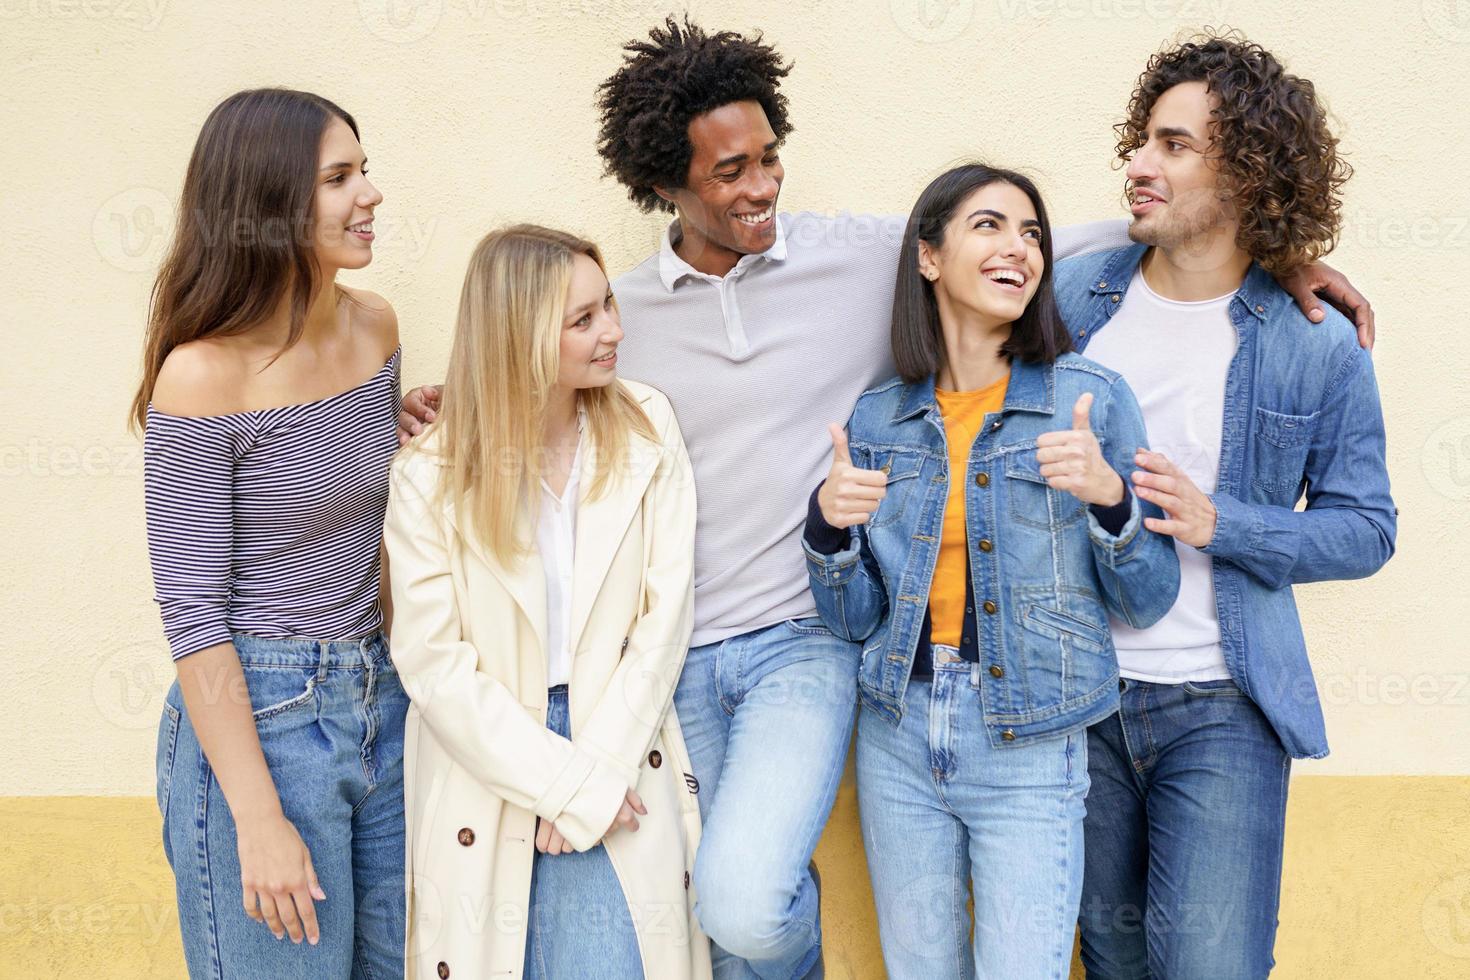 grupo multiétnico de amigos posando enquanto se divertem e riem juntos foto